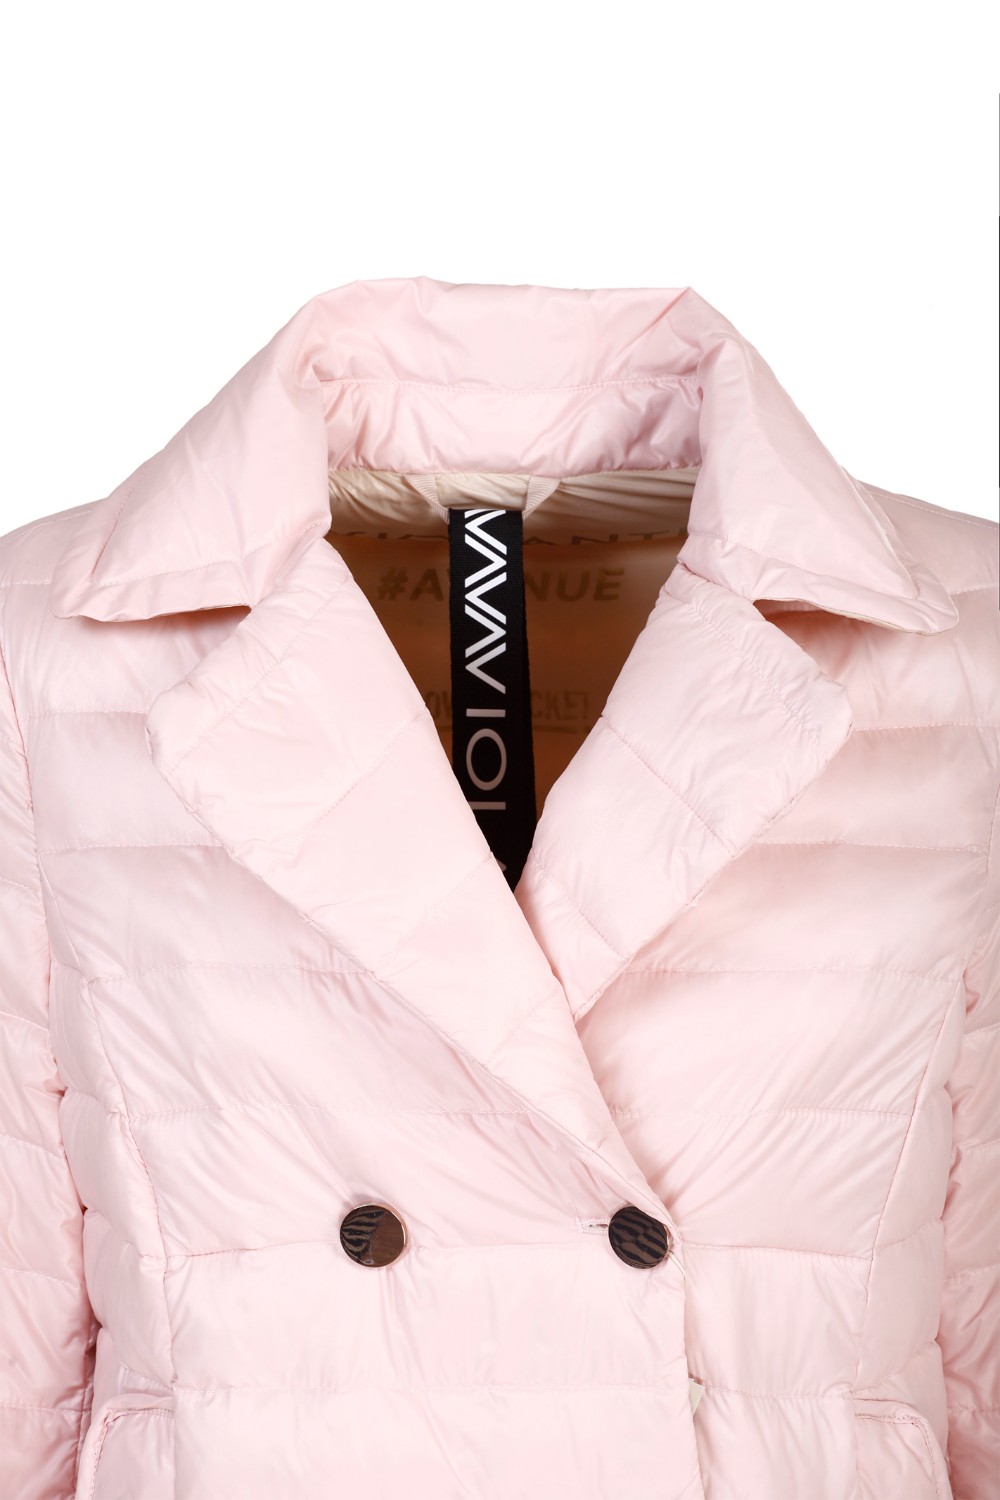 shop VIOLANTI Saldi Piumino: Violanti giacchetto in piuma light, doppiopetto.
Composizione: 100% poliammide.
Made in P.R.C.. VIA102 5000-504 number 4022407